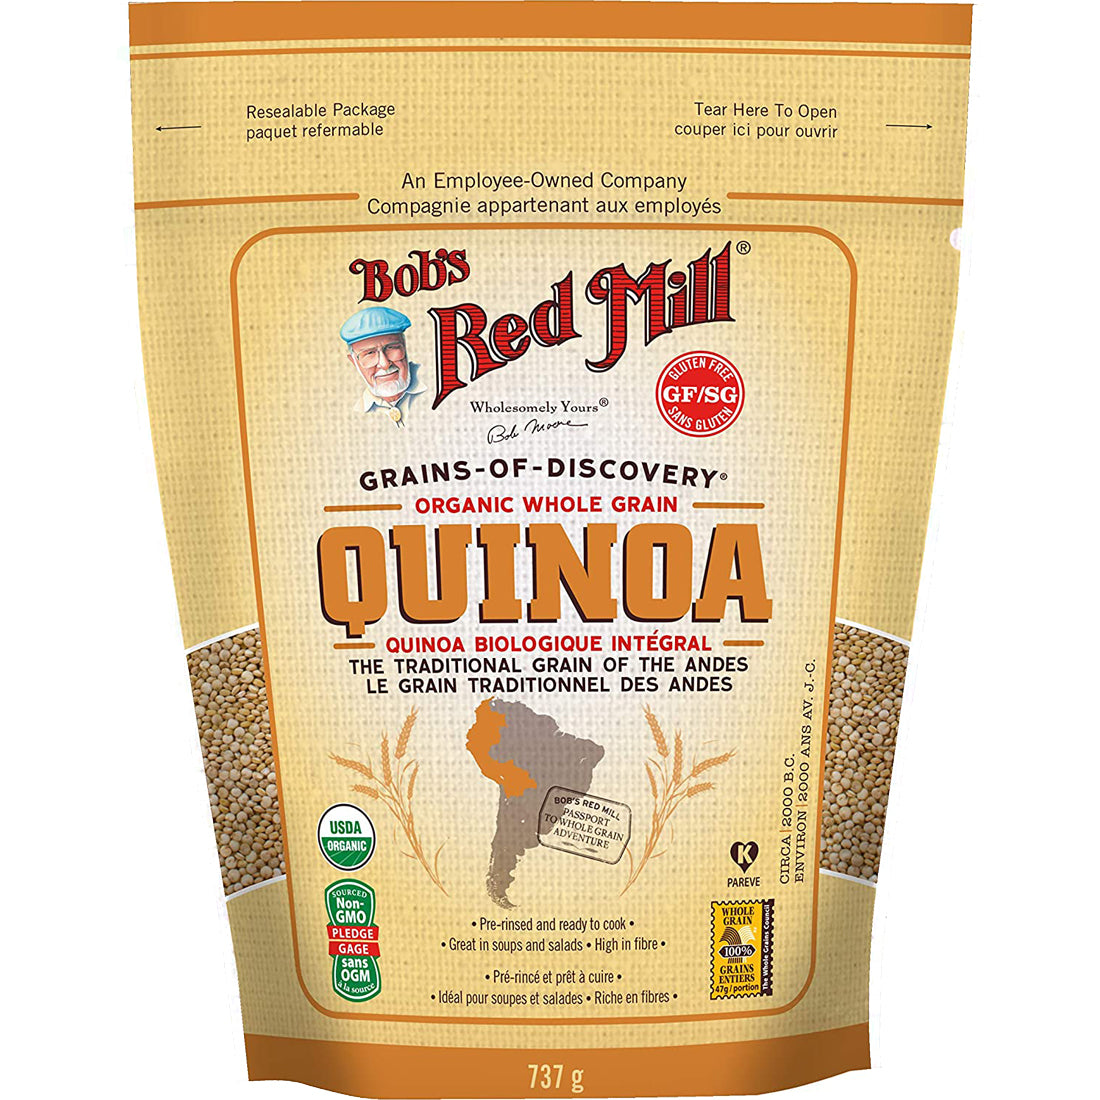 Bob's Red Mill Organic Whole Grain Quinoa, 737g